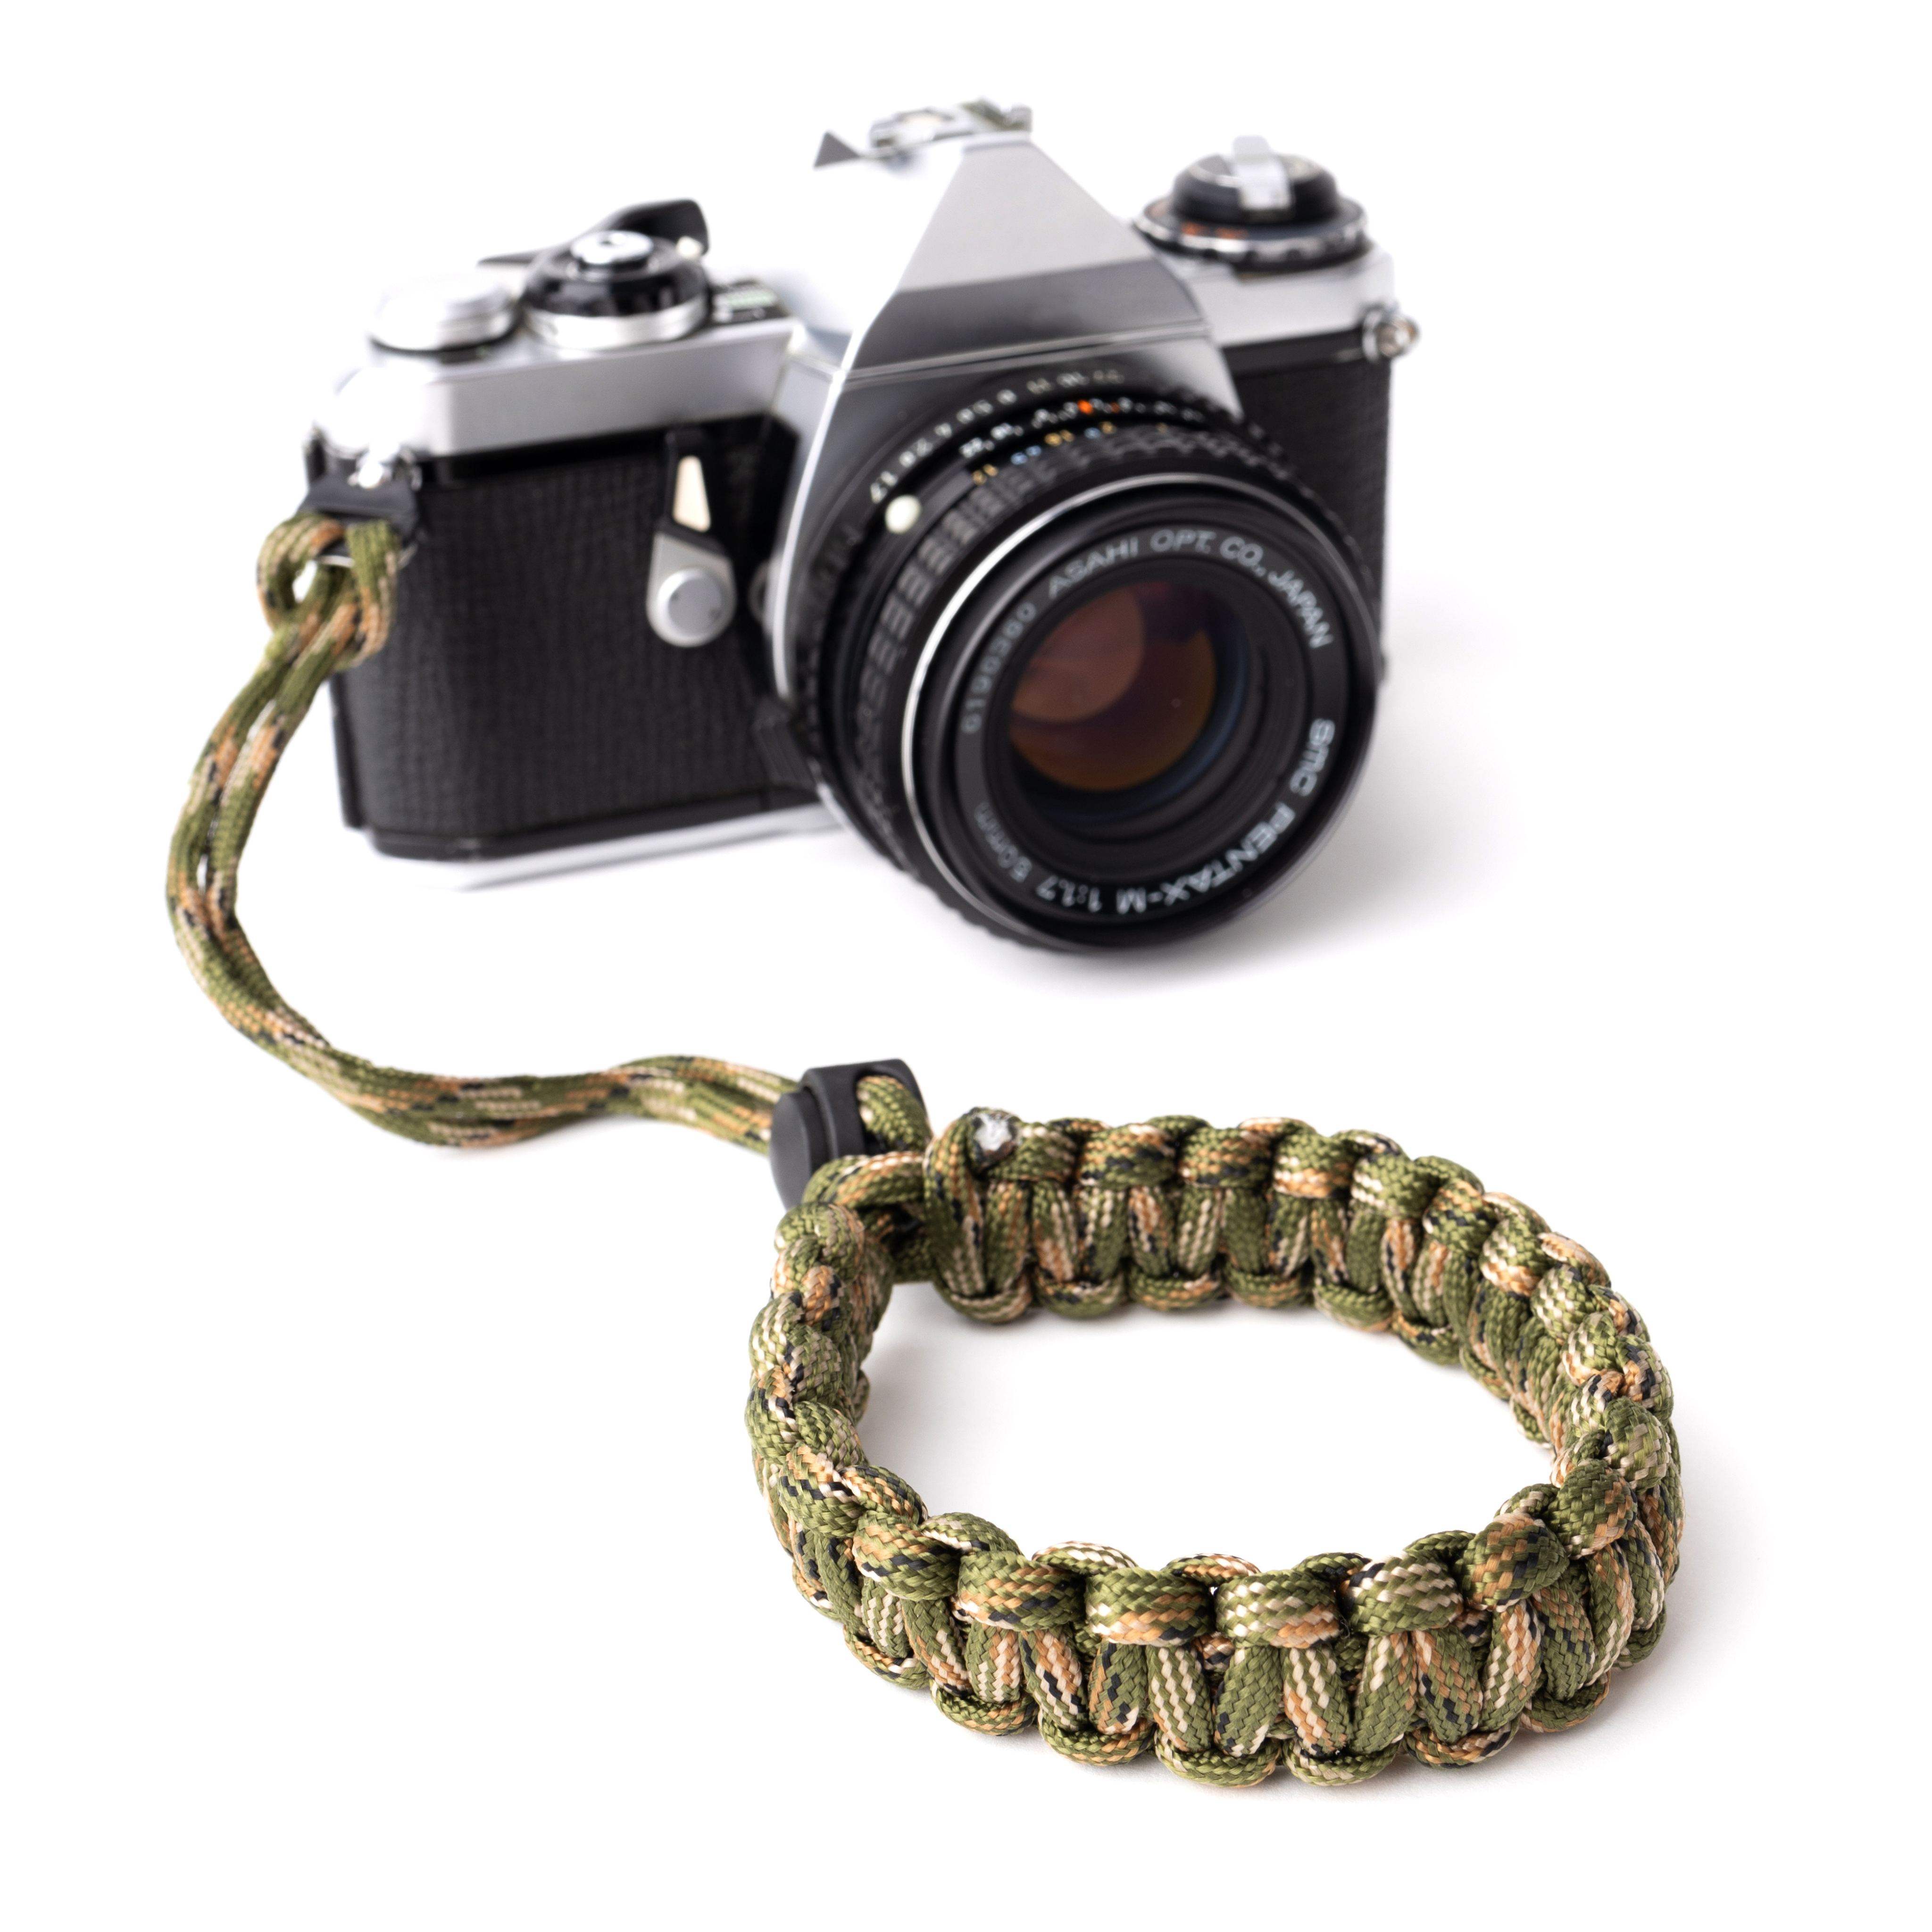 LENS-AID Kamera Camouflage/Grün fürs Handschlaufe, aus Handschlaufe Kamera Paracord Handgelenk,